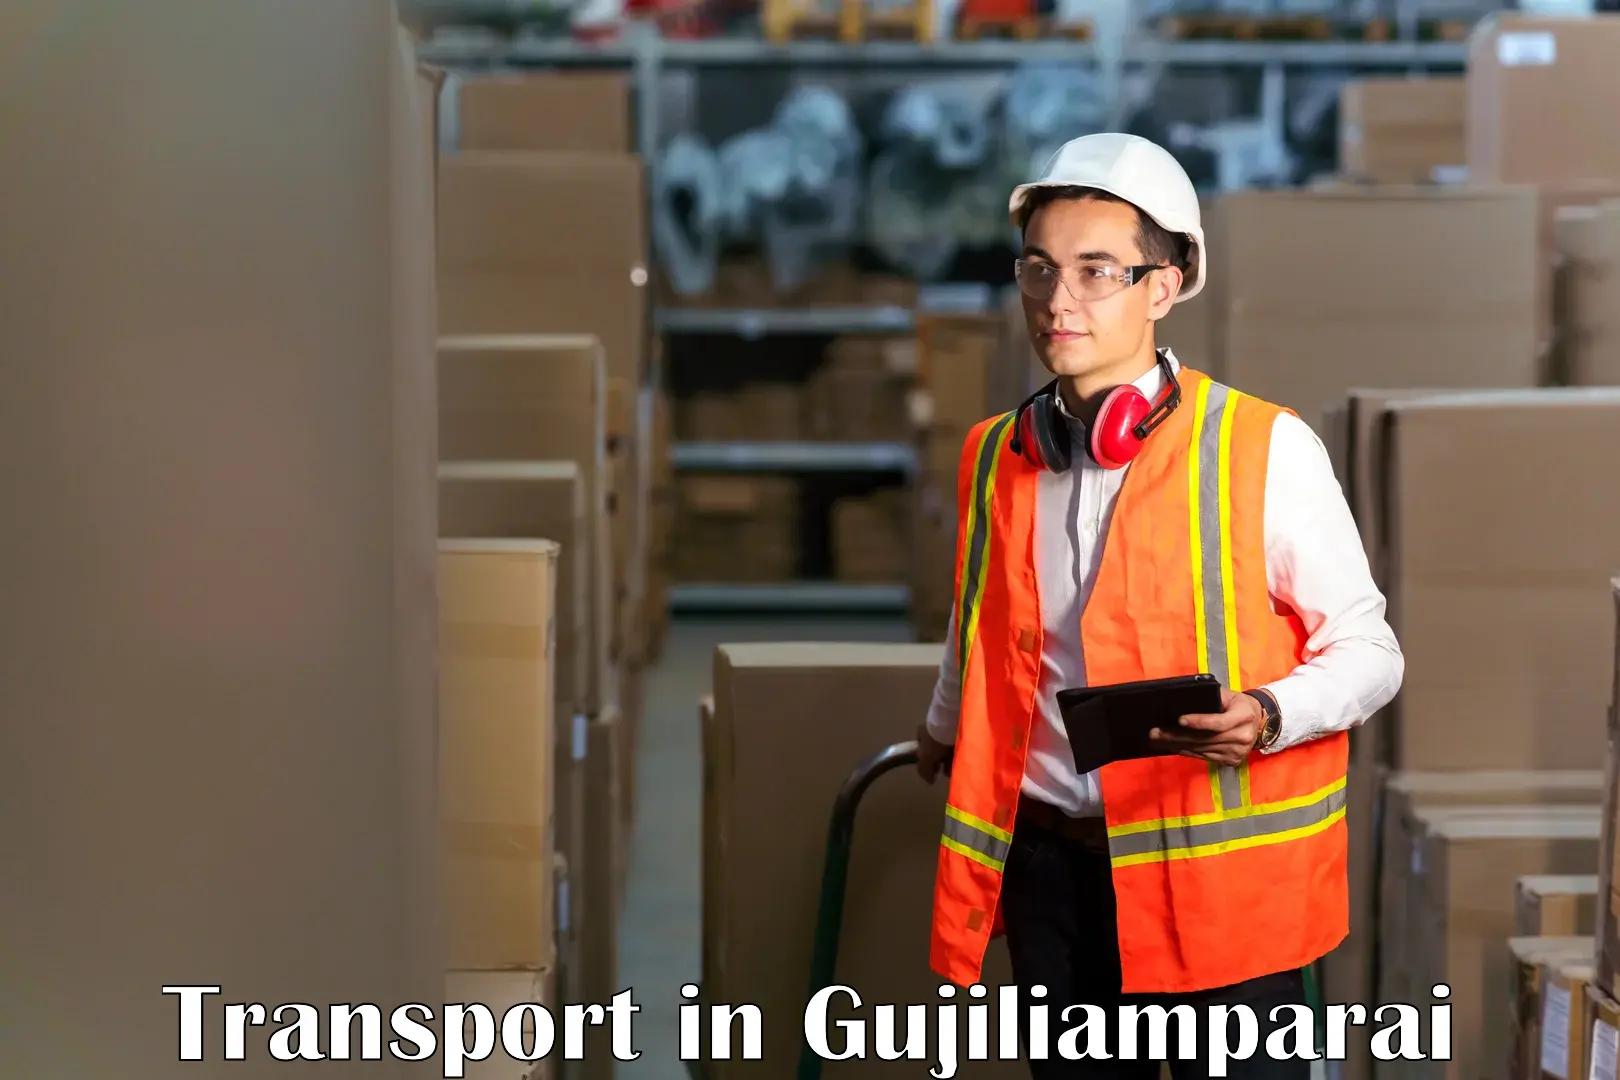 Delivery service in Gujiliamparai